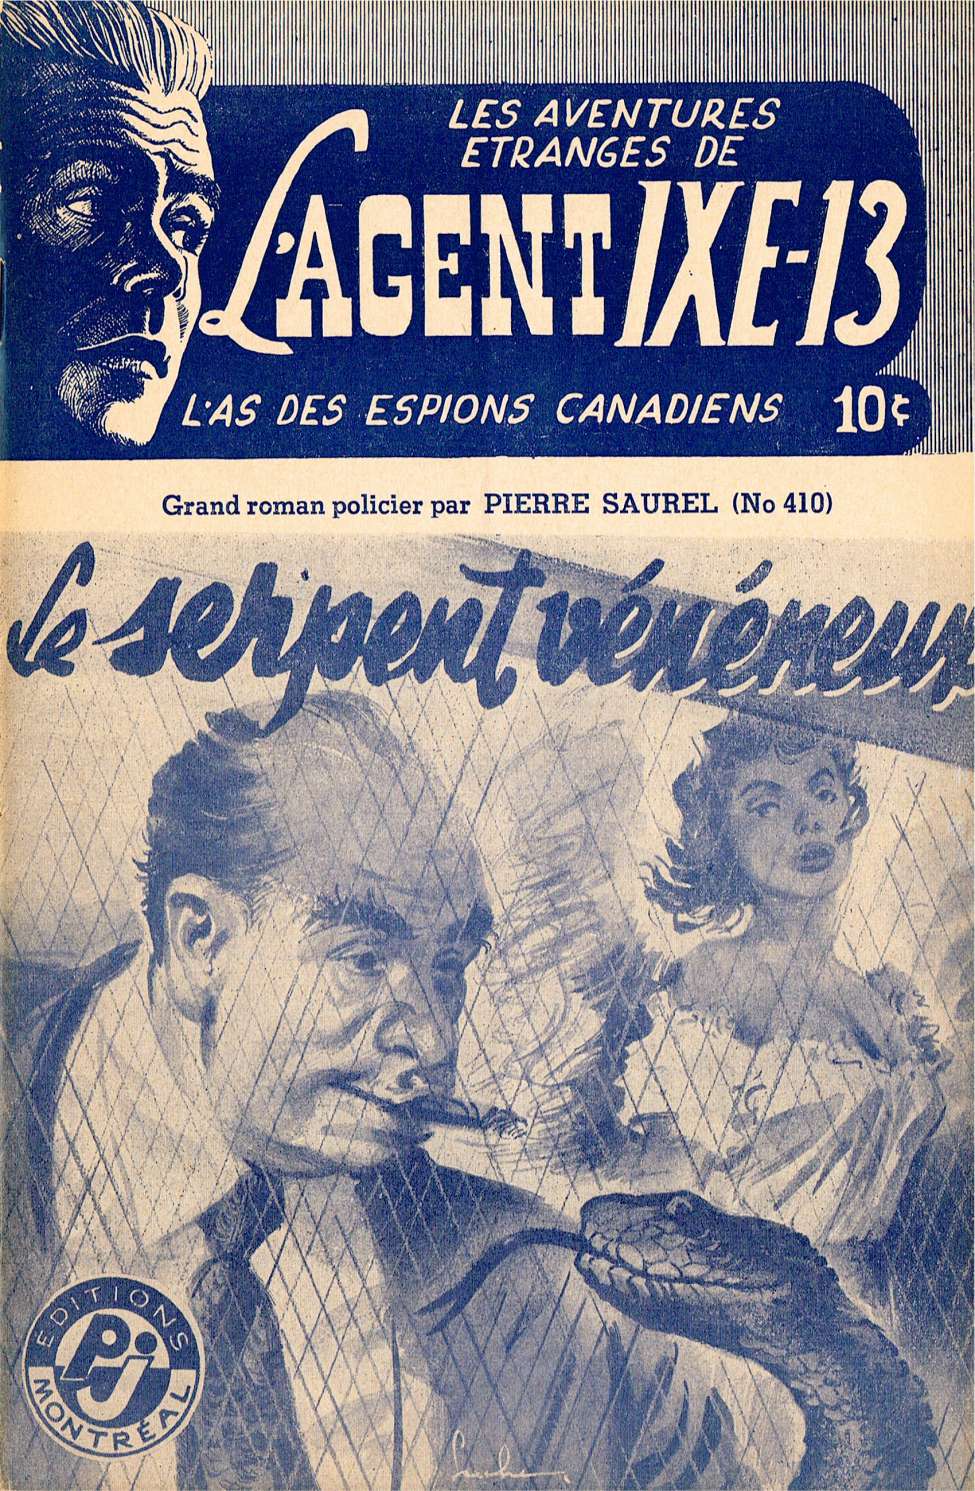 Book Cover For L'Agent IXE-13 v2 410 - Le serpent vénéneux